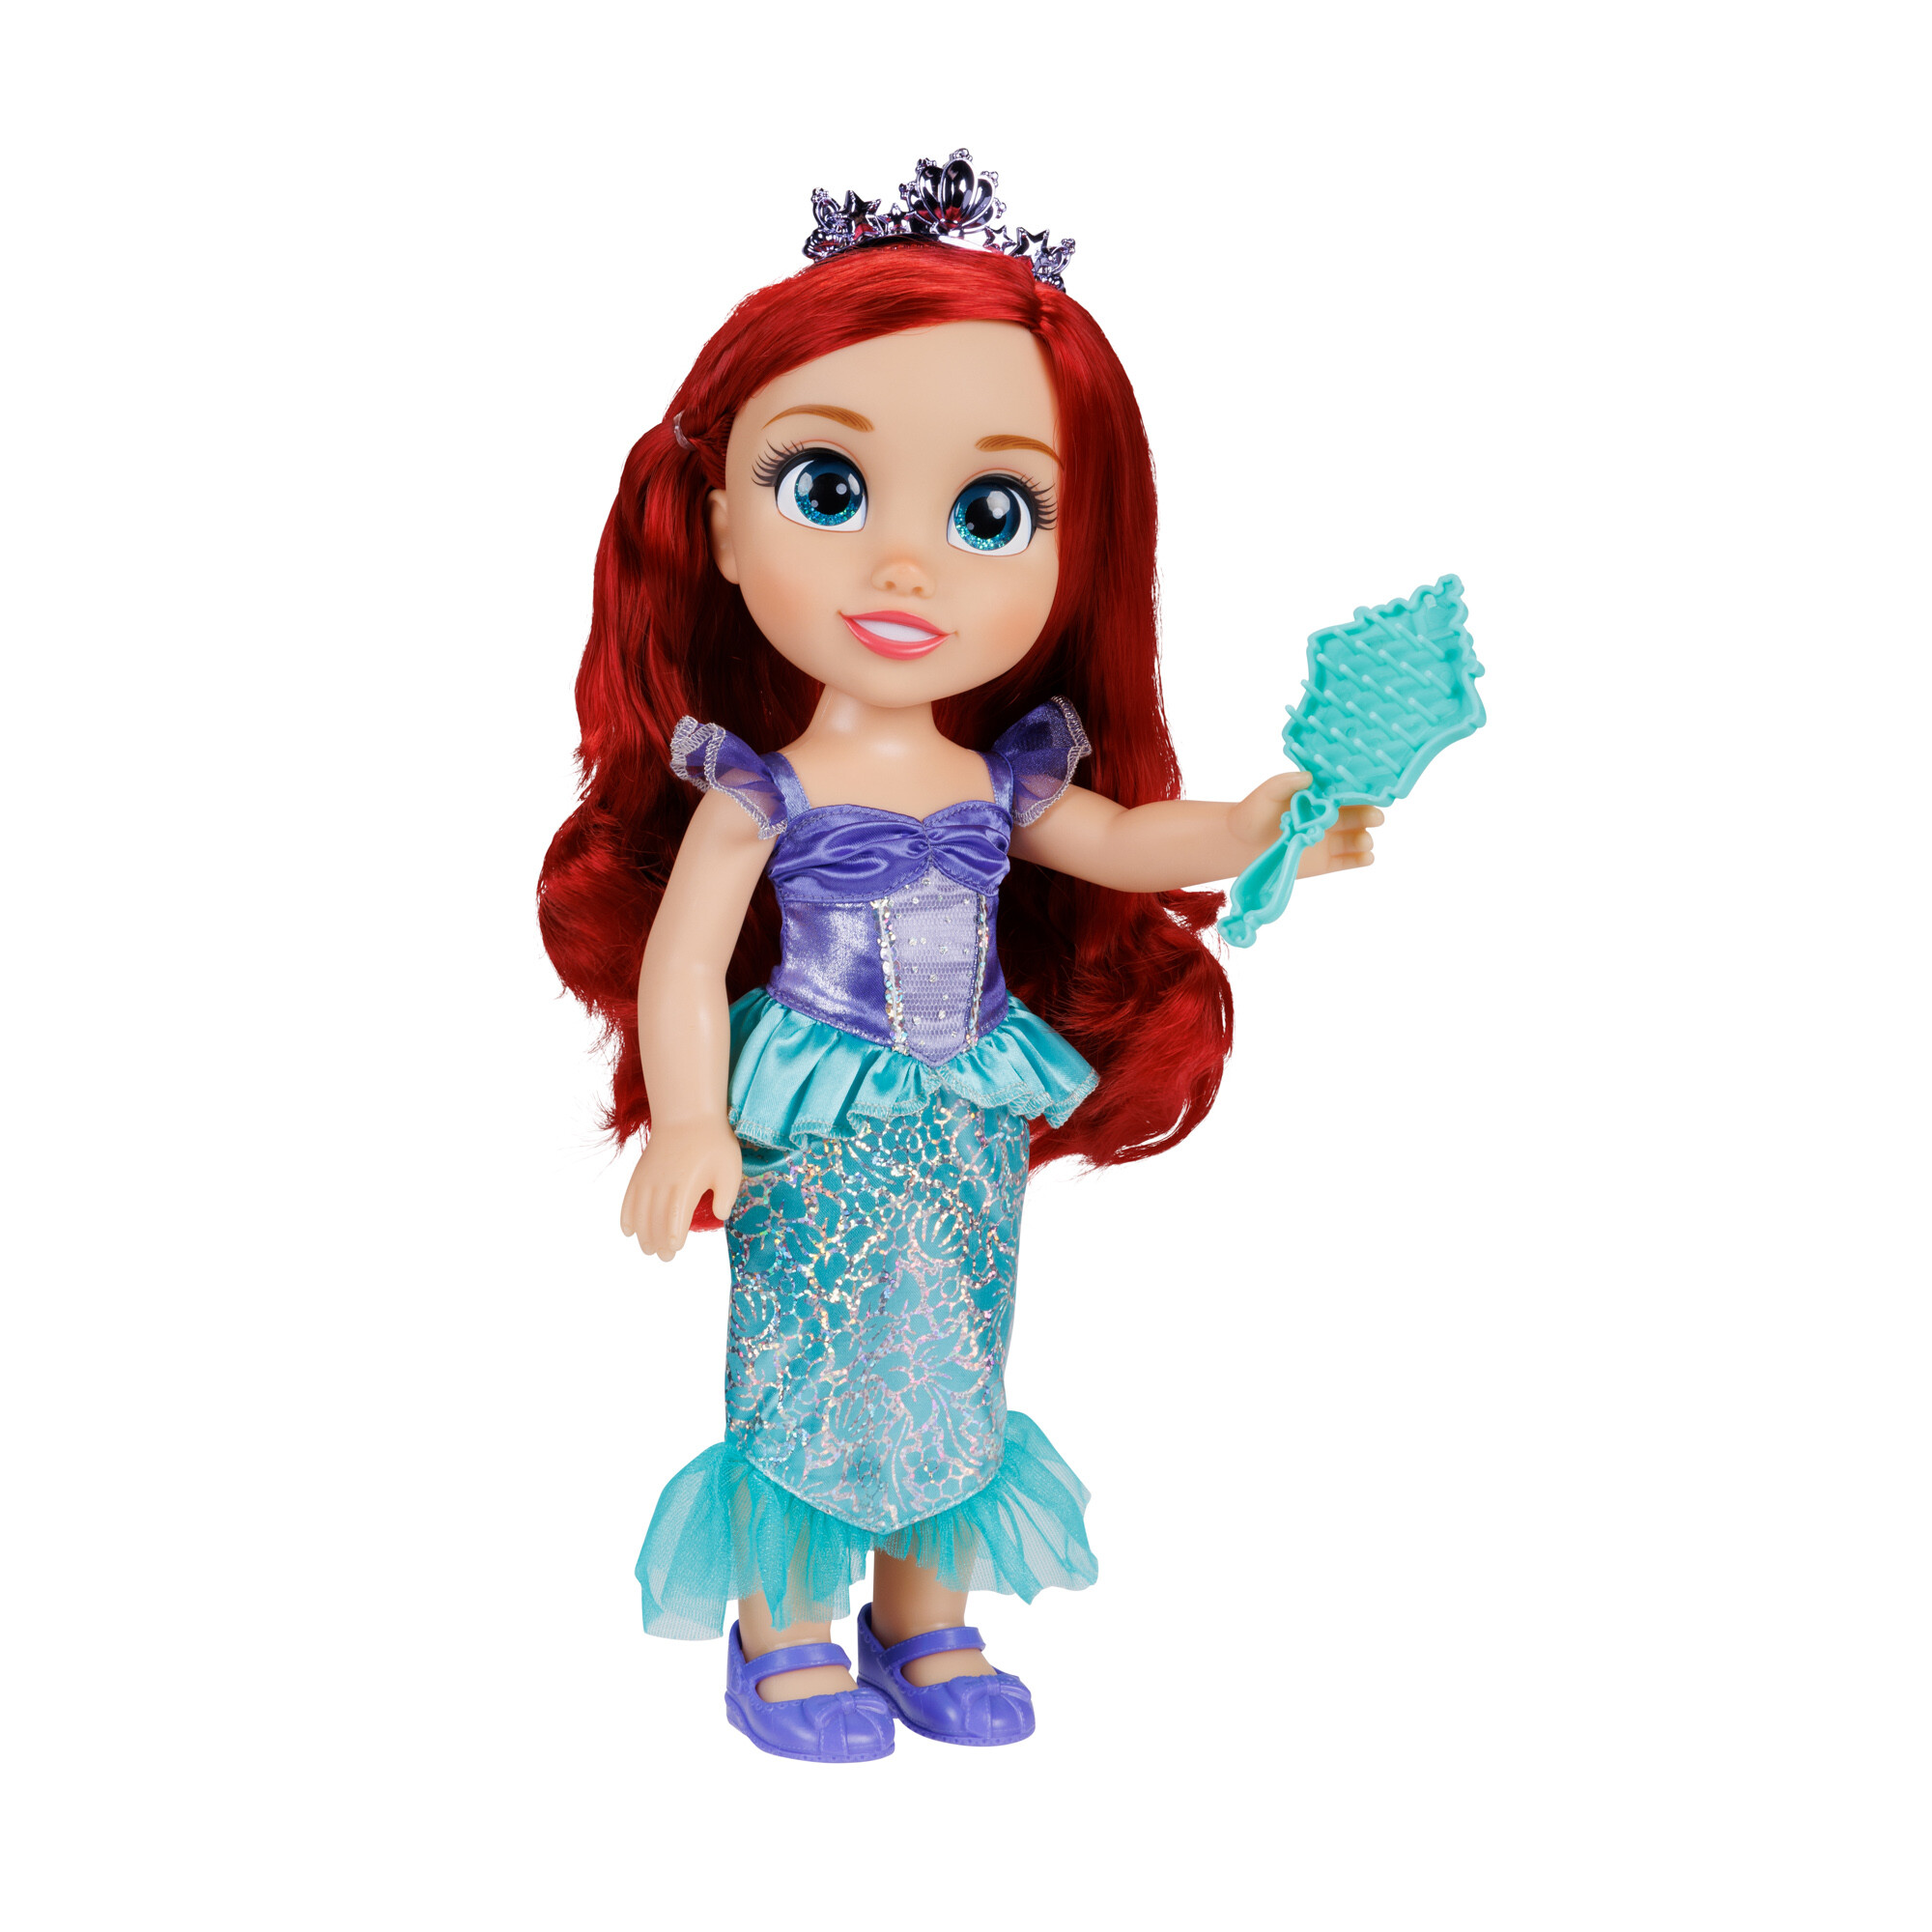 Disney princess bambola da 38 cm di ariel con occhi scintillanti! - DISNEY PRINCESS